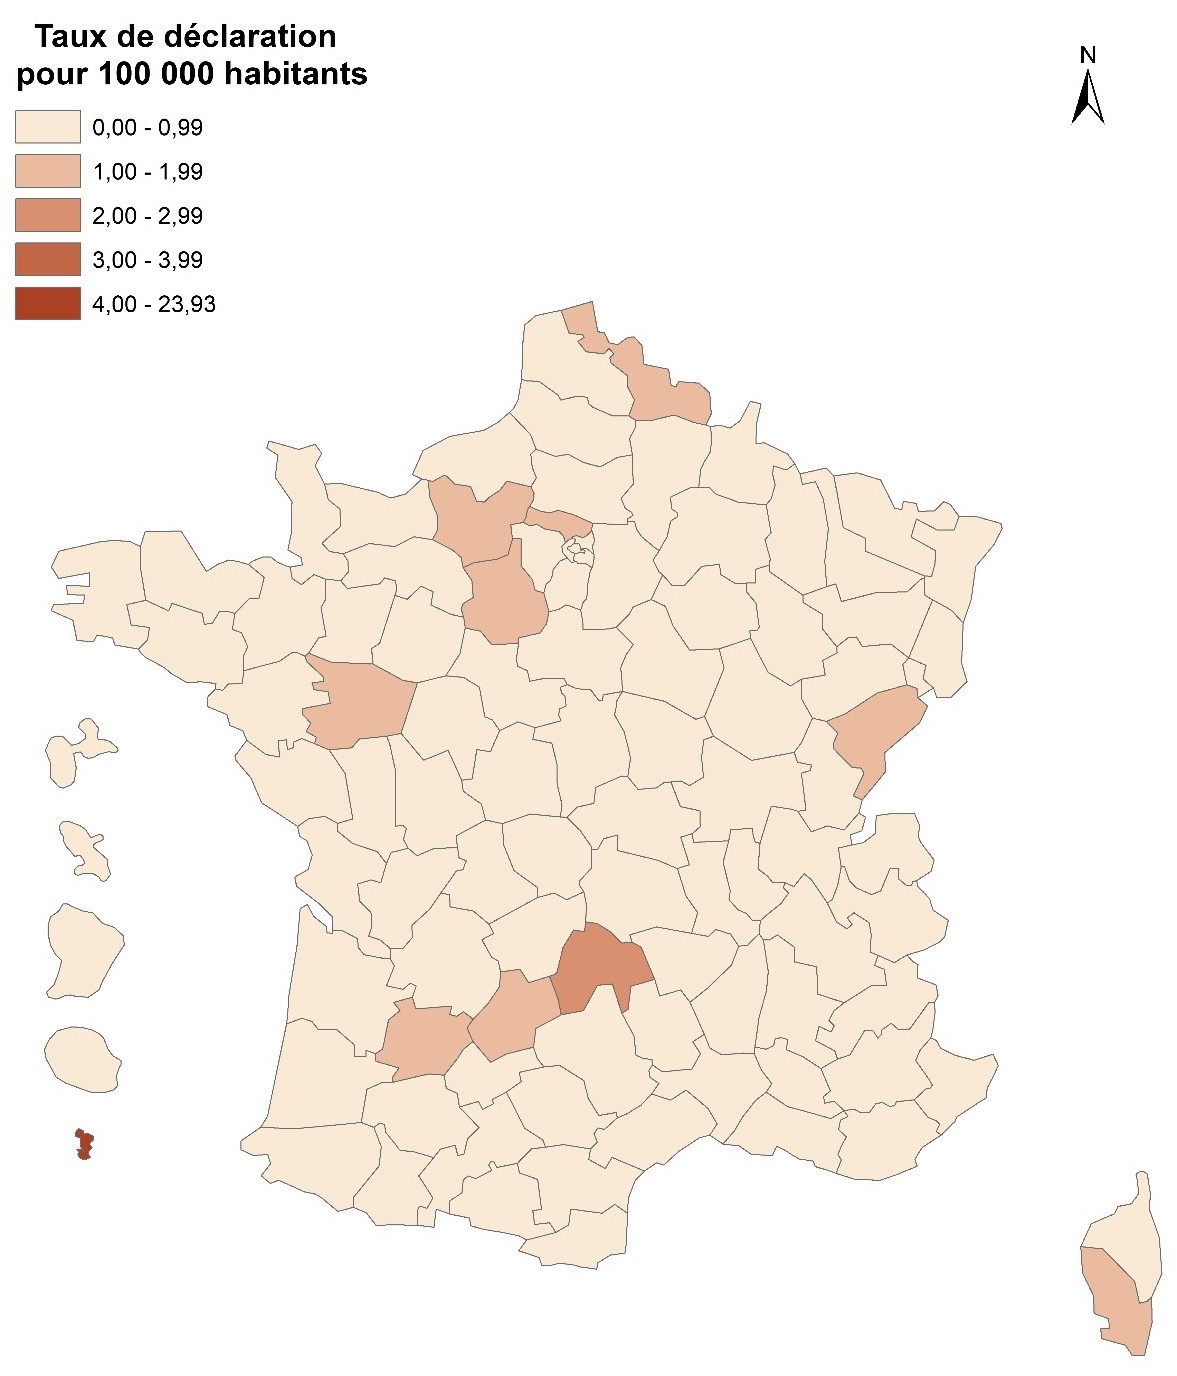 Taux de déclaration (pour 100 000 habitants) d’hépatite aiguë A par département, France entière, 2021